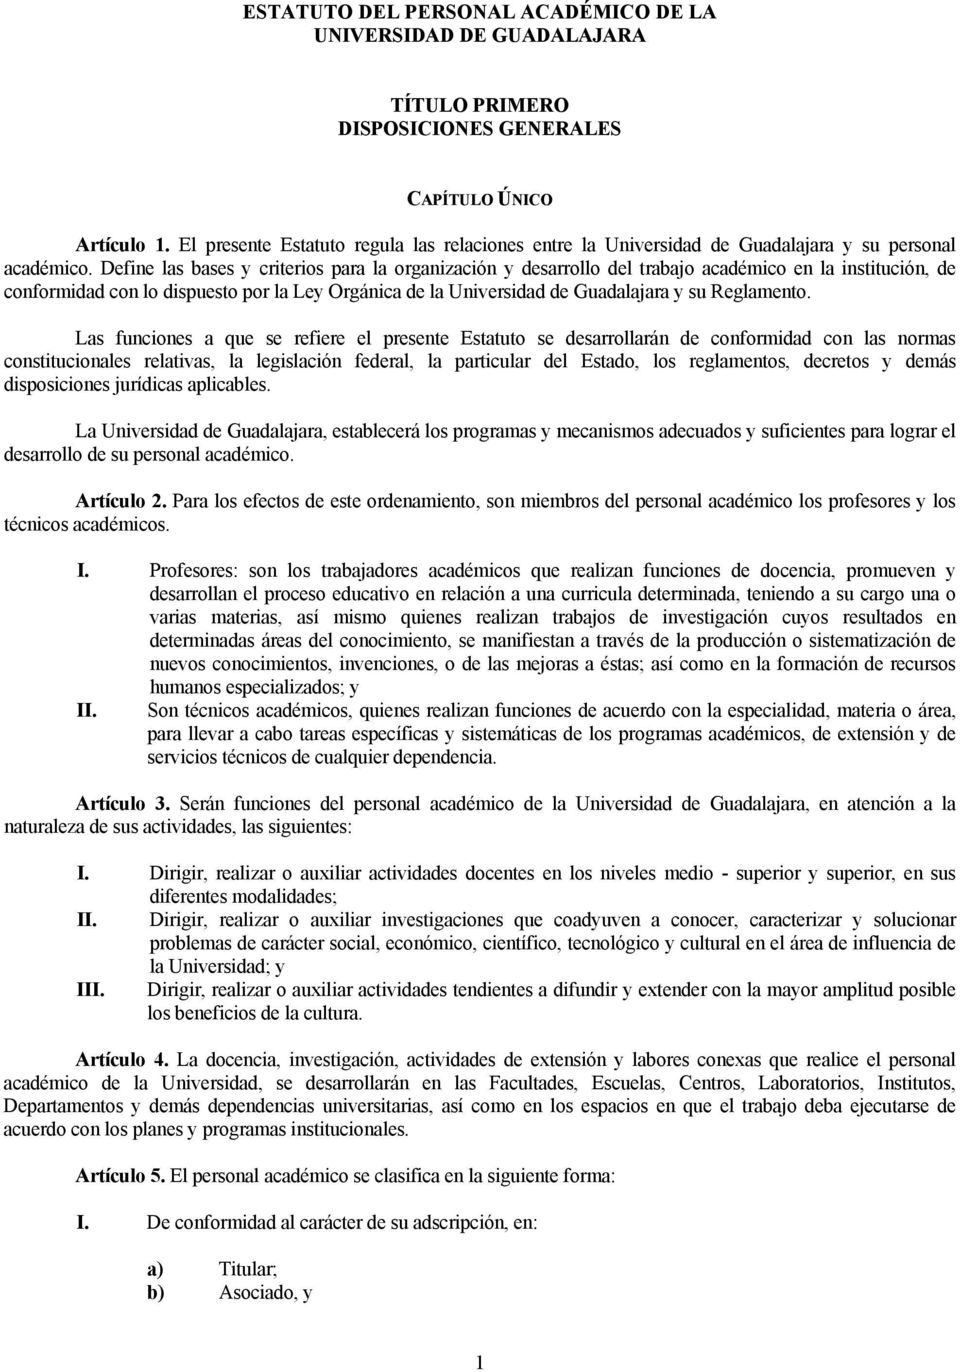 Define las bases y criterios para la organización y desarrollo del trabajo académico en la institución, de conformidad con lo dispuesto por la Ley Orgánica de la Universidad de Guadalajara y su